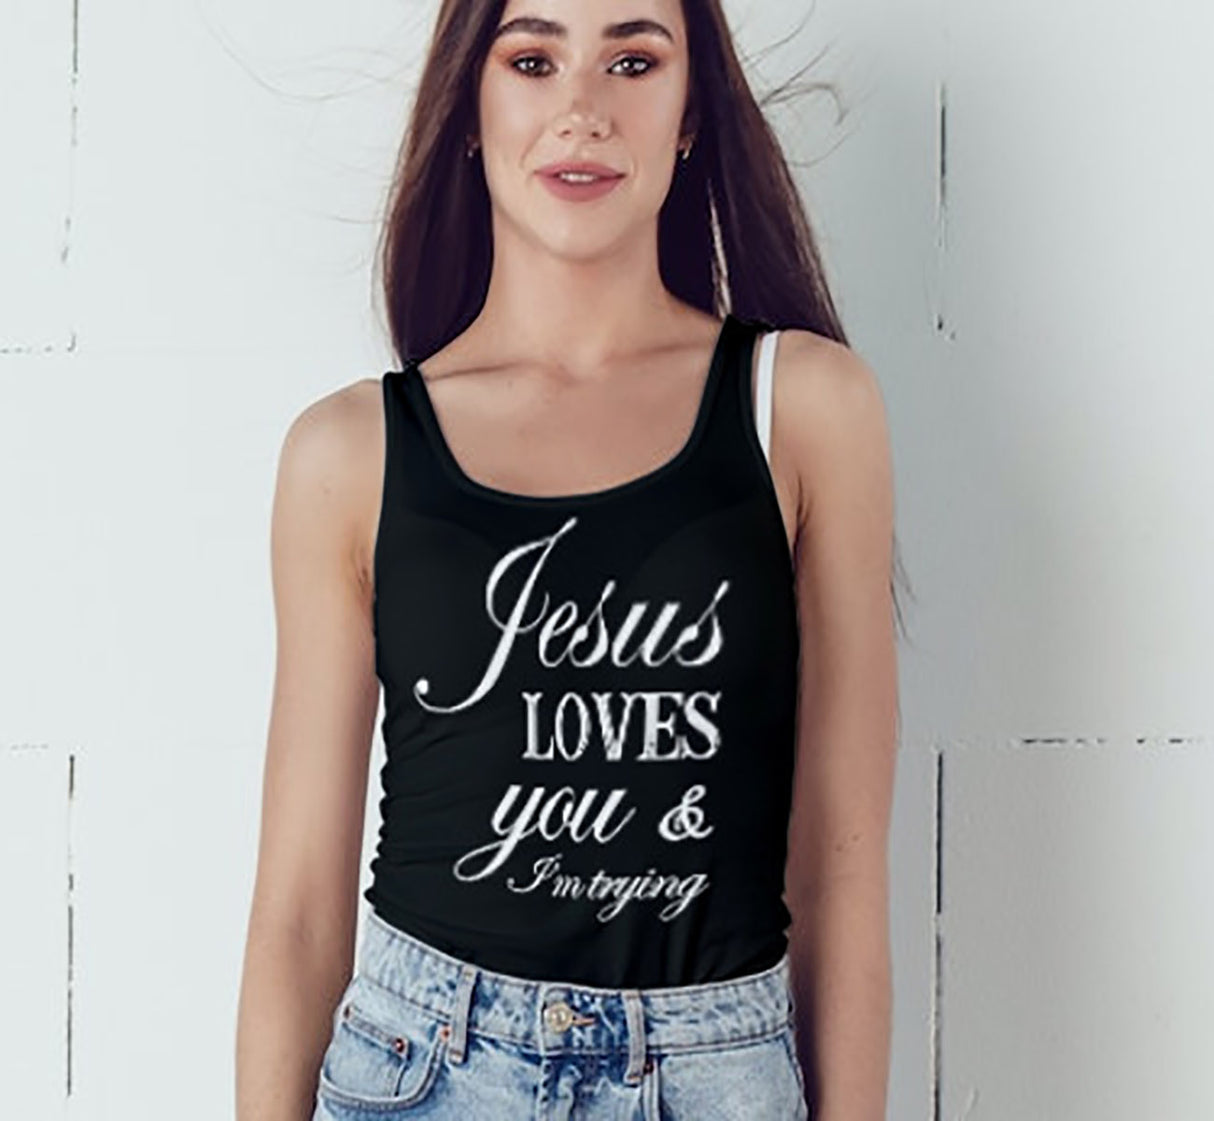 ltt- Jesus Loves You Ladies Tank Tops